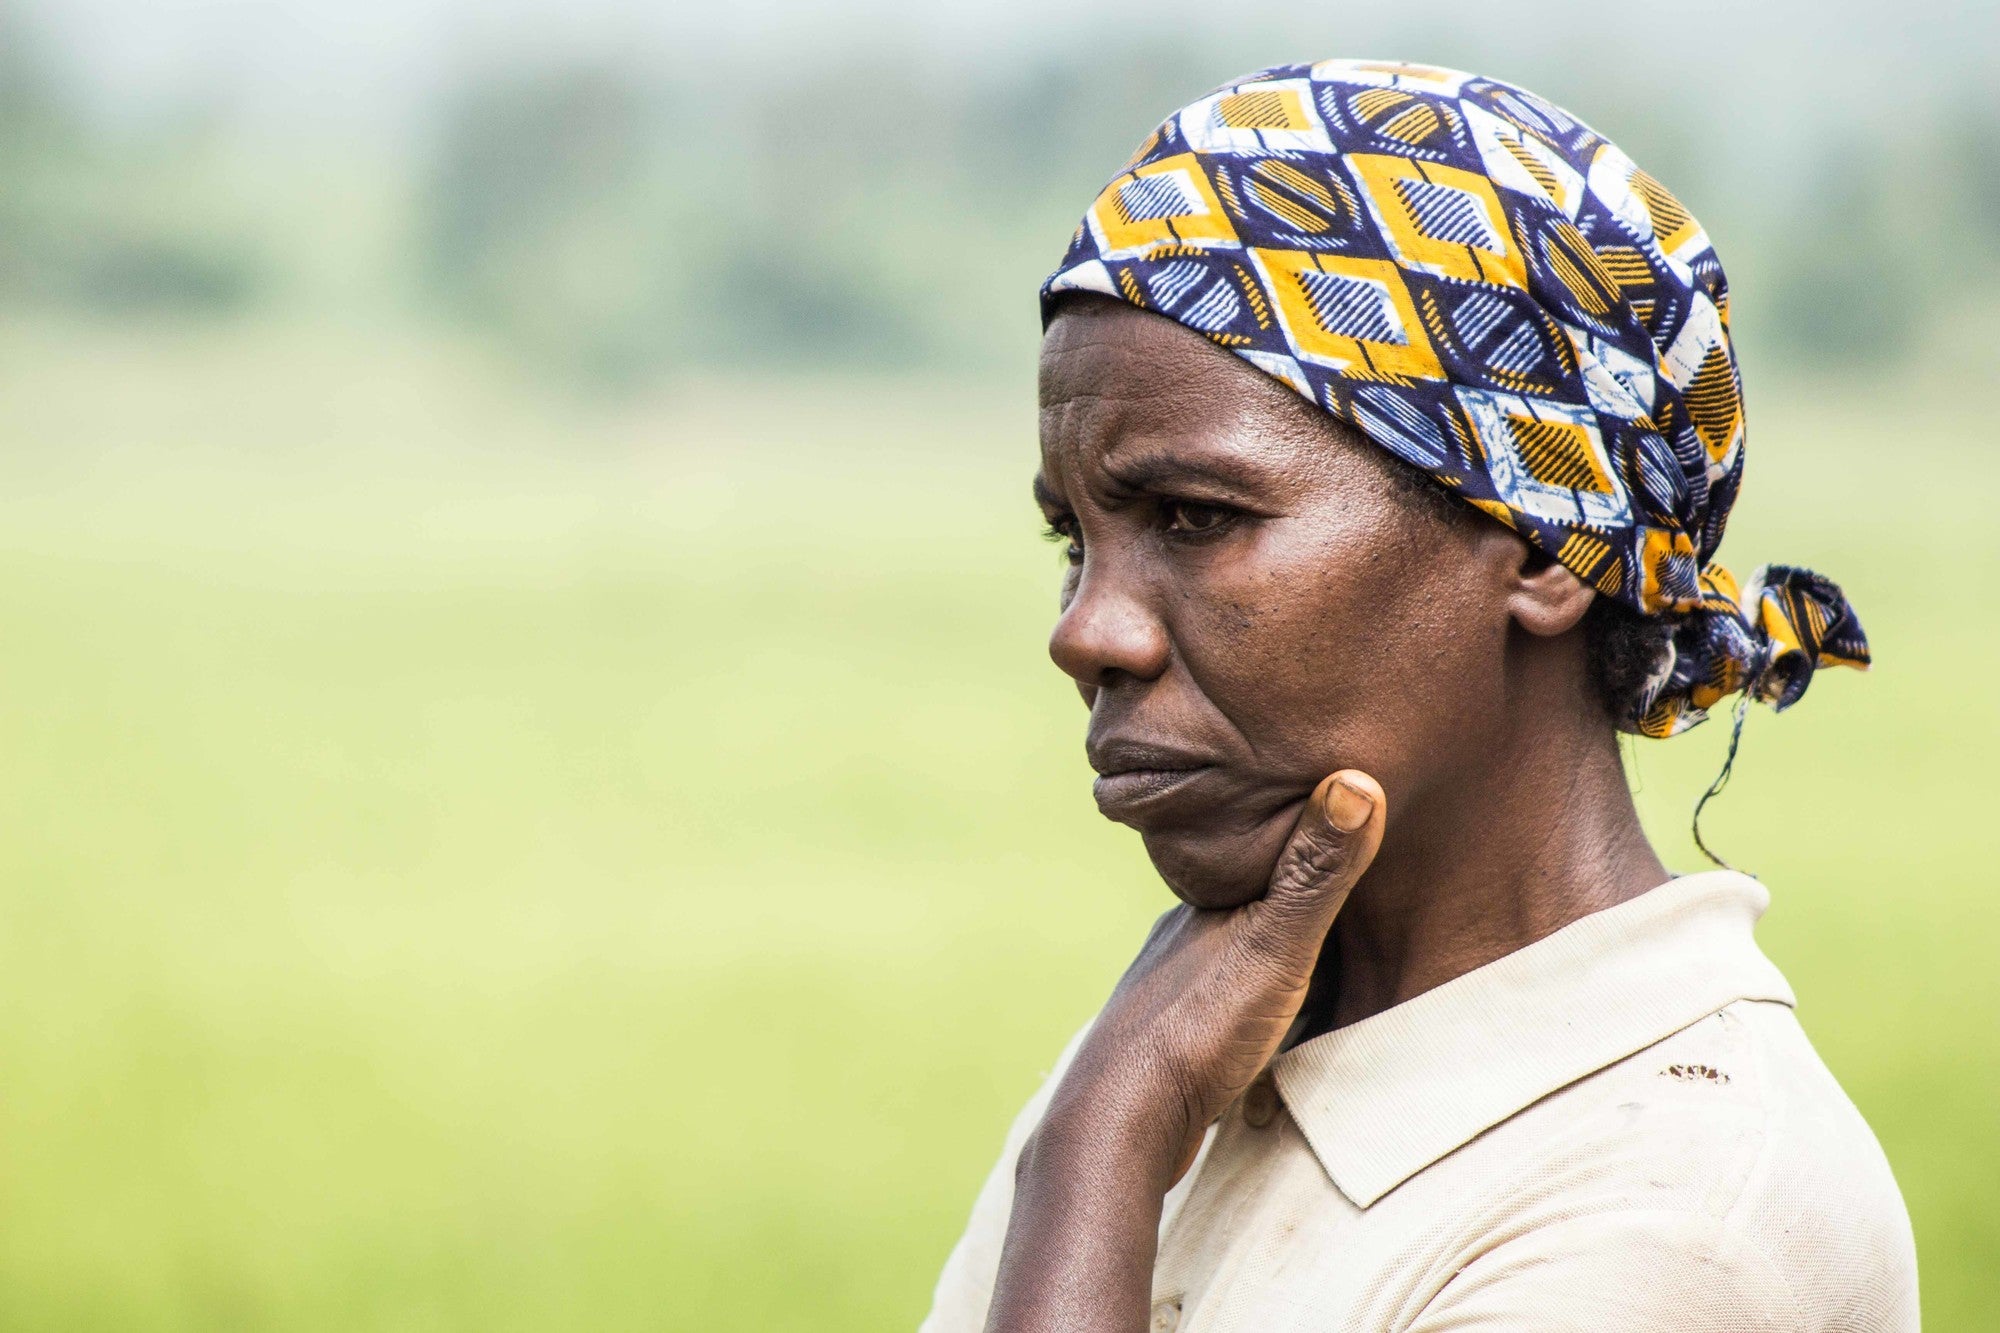 A woman in Burundi stands in a field.